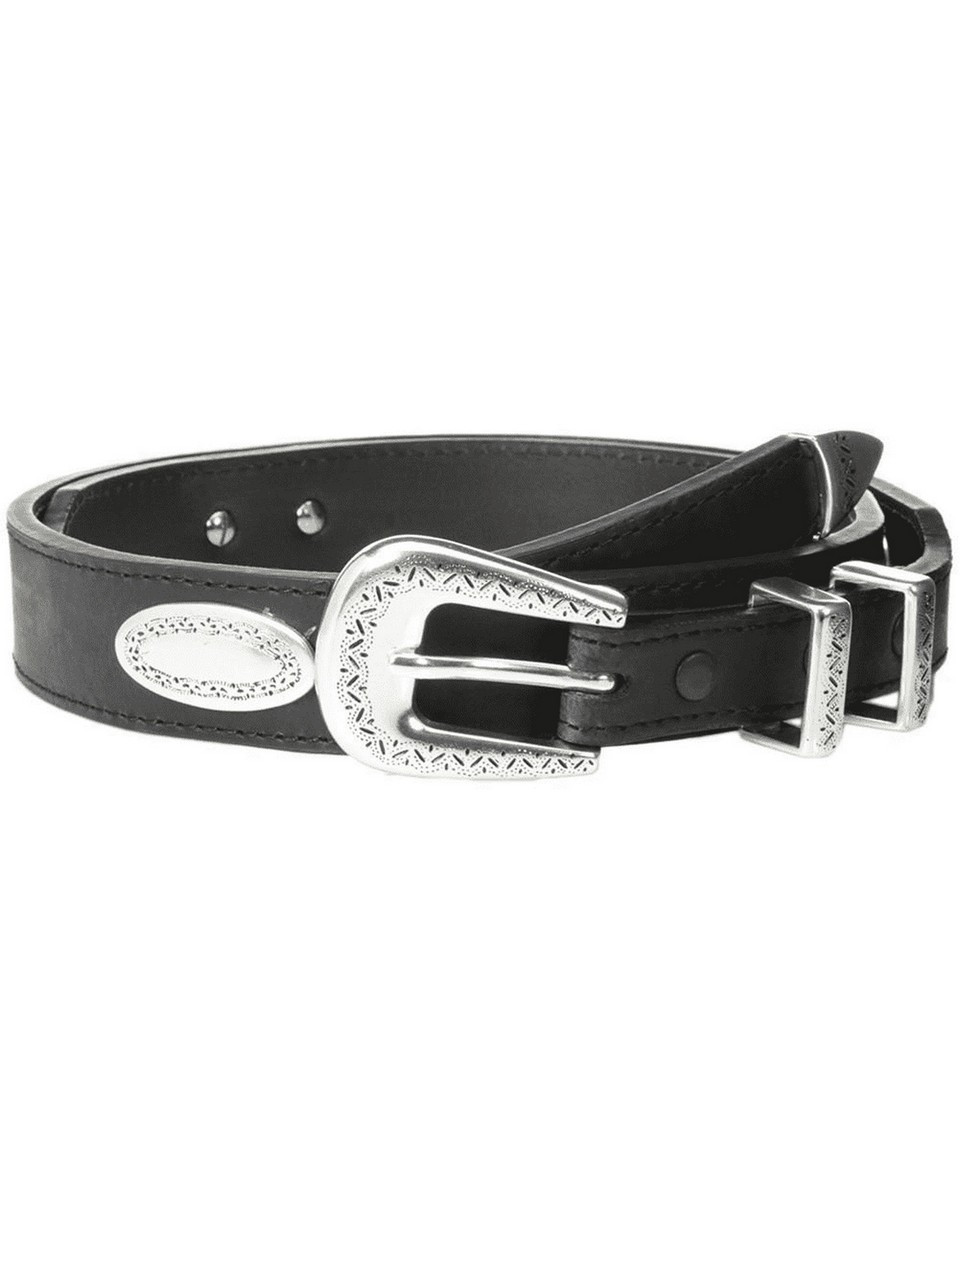 NoconaÂ® Men's Black Leather Top Hand Concho Belt